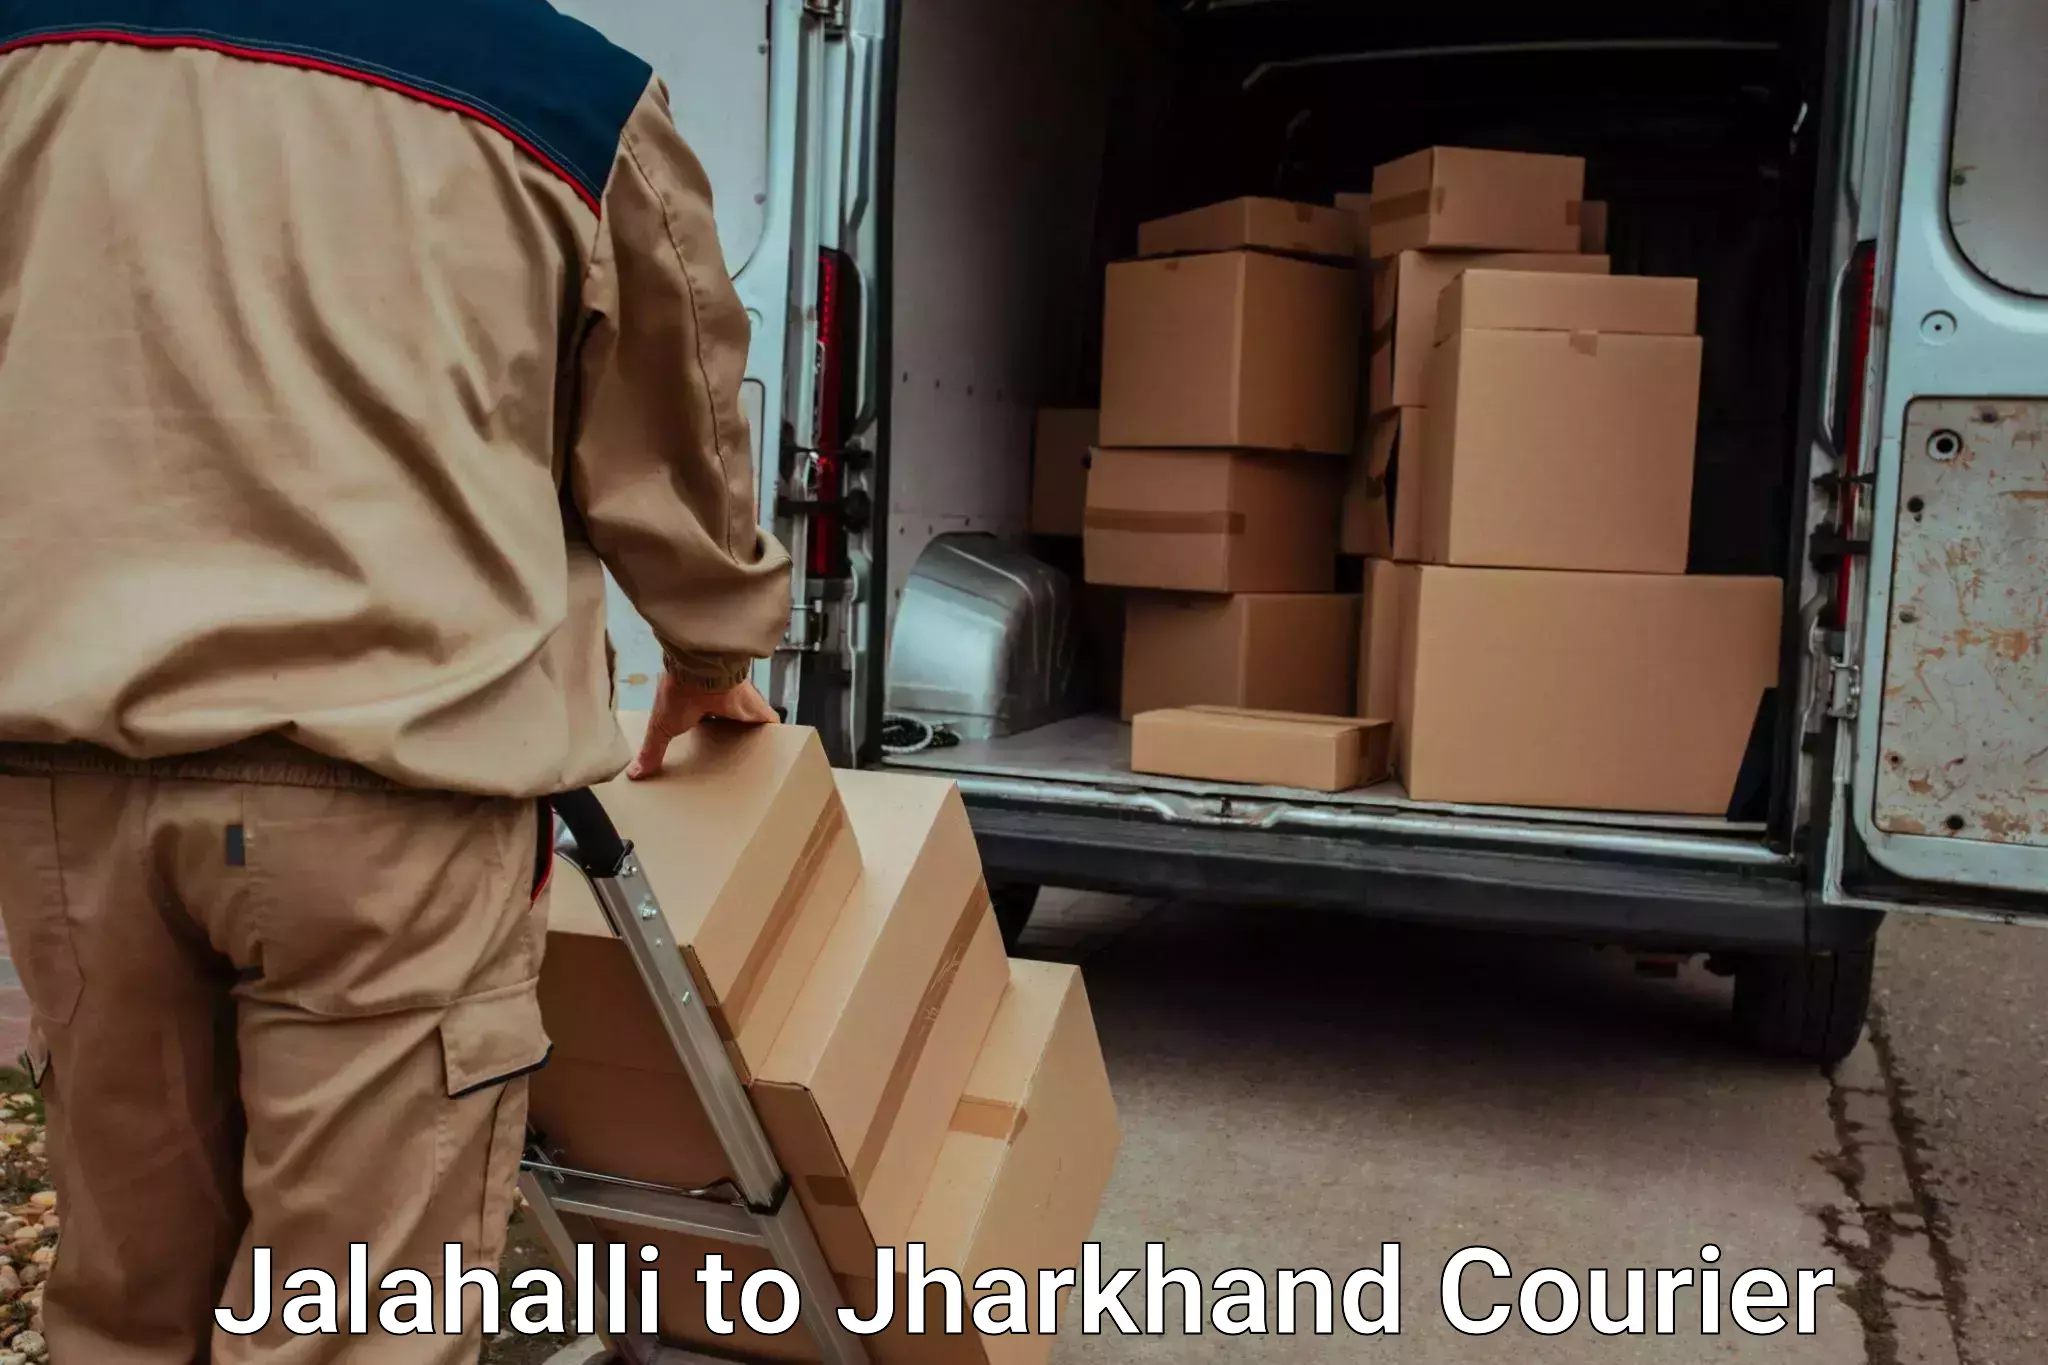 Luggage transfer service Jalahalli to Satbarwa